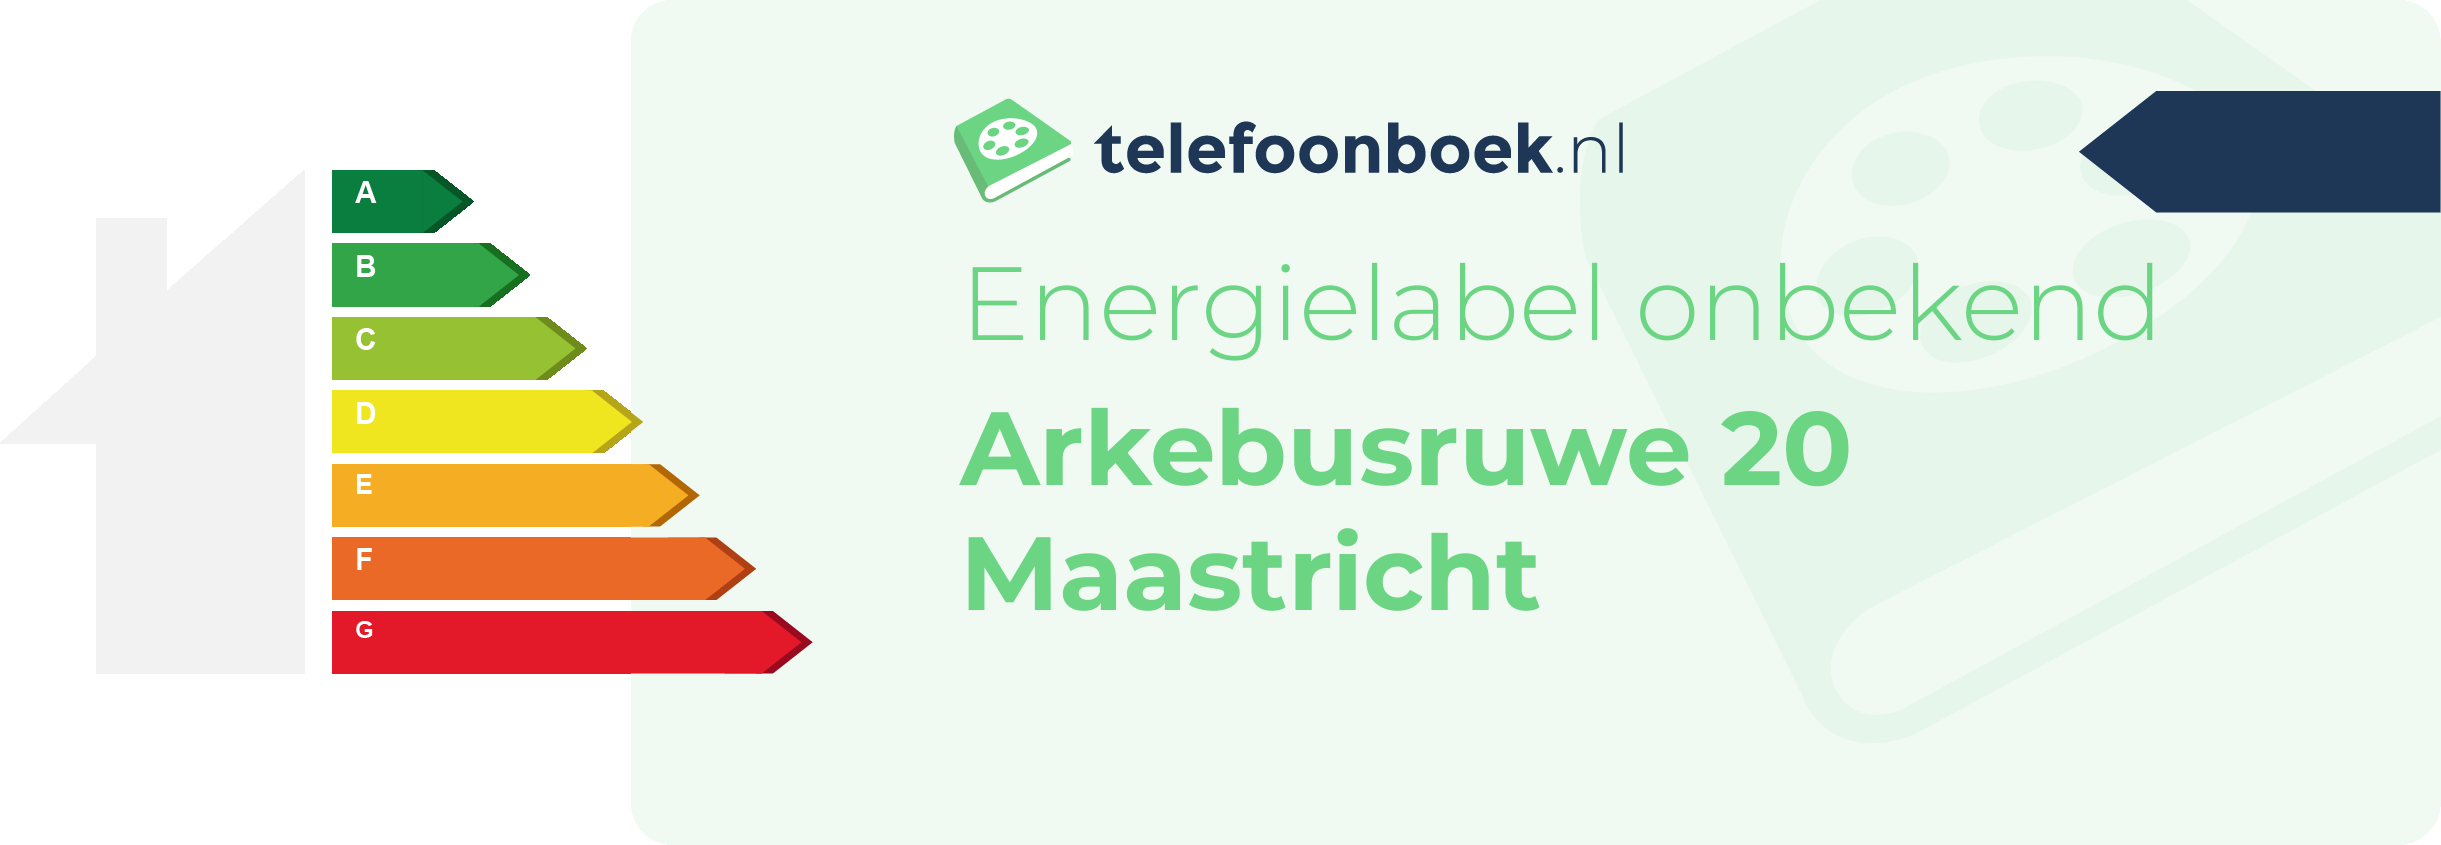 Energielabel Arkebusruwe 20 Maastricht